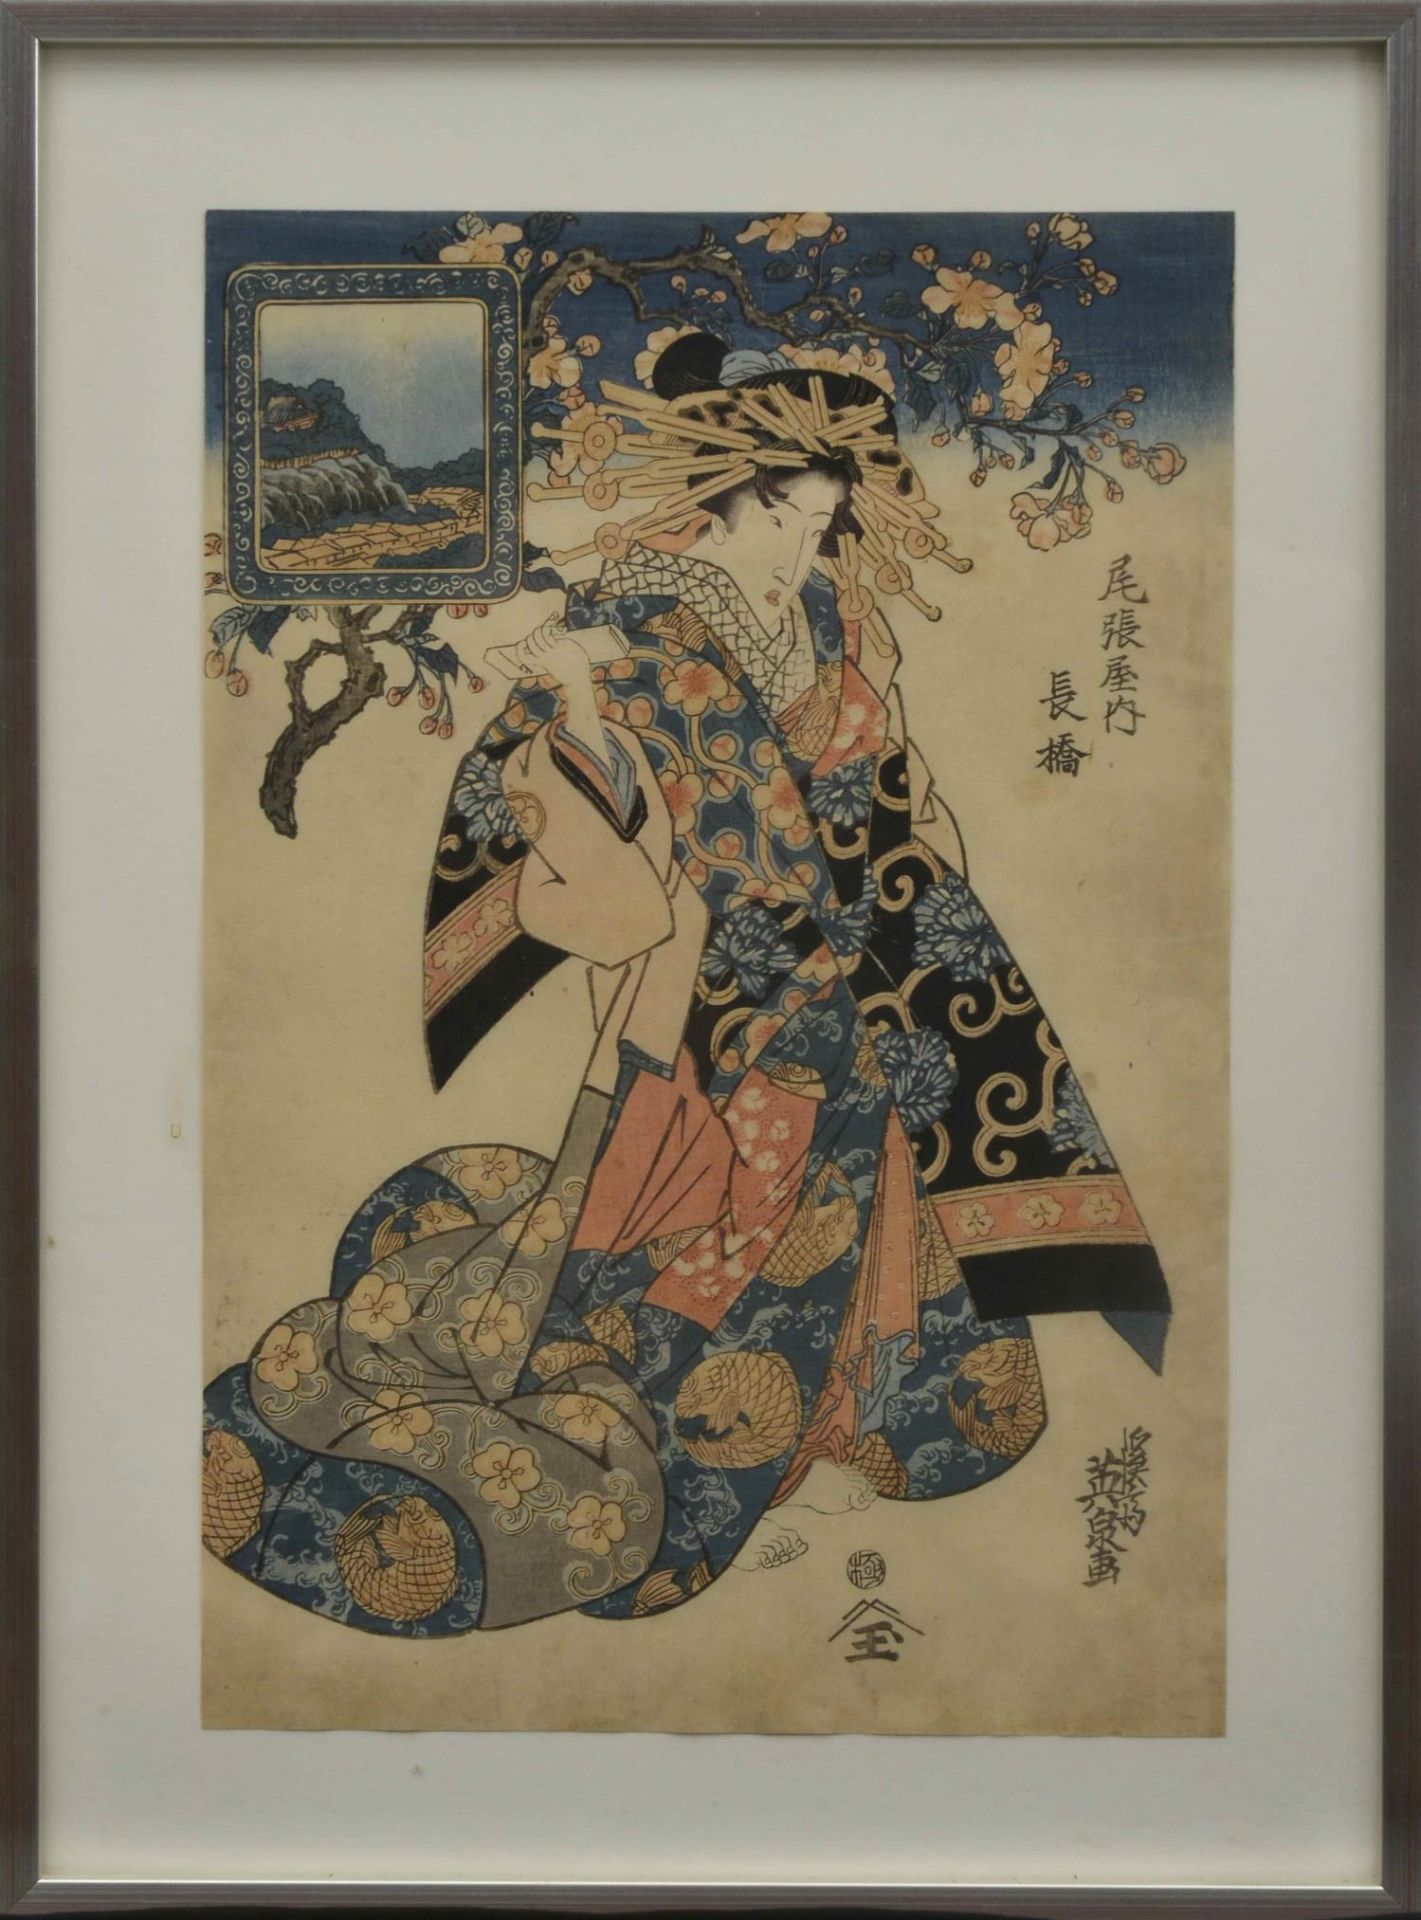 JAPON, Keisai Eisen (1790-1848), "La courtisane Nagabashi." Estampe japonaise de la maison Owar... - Image 2 of 3